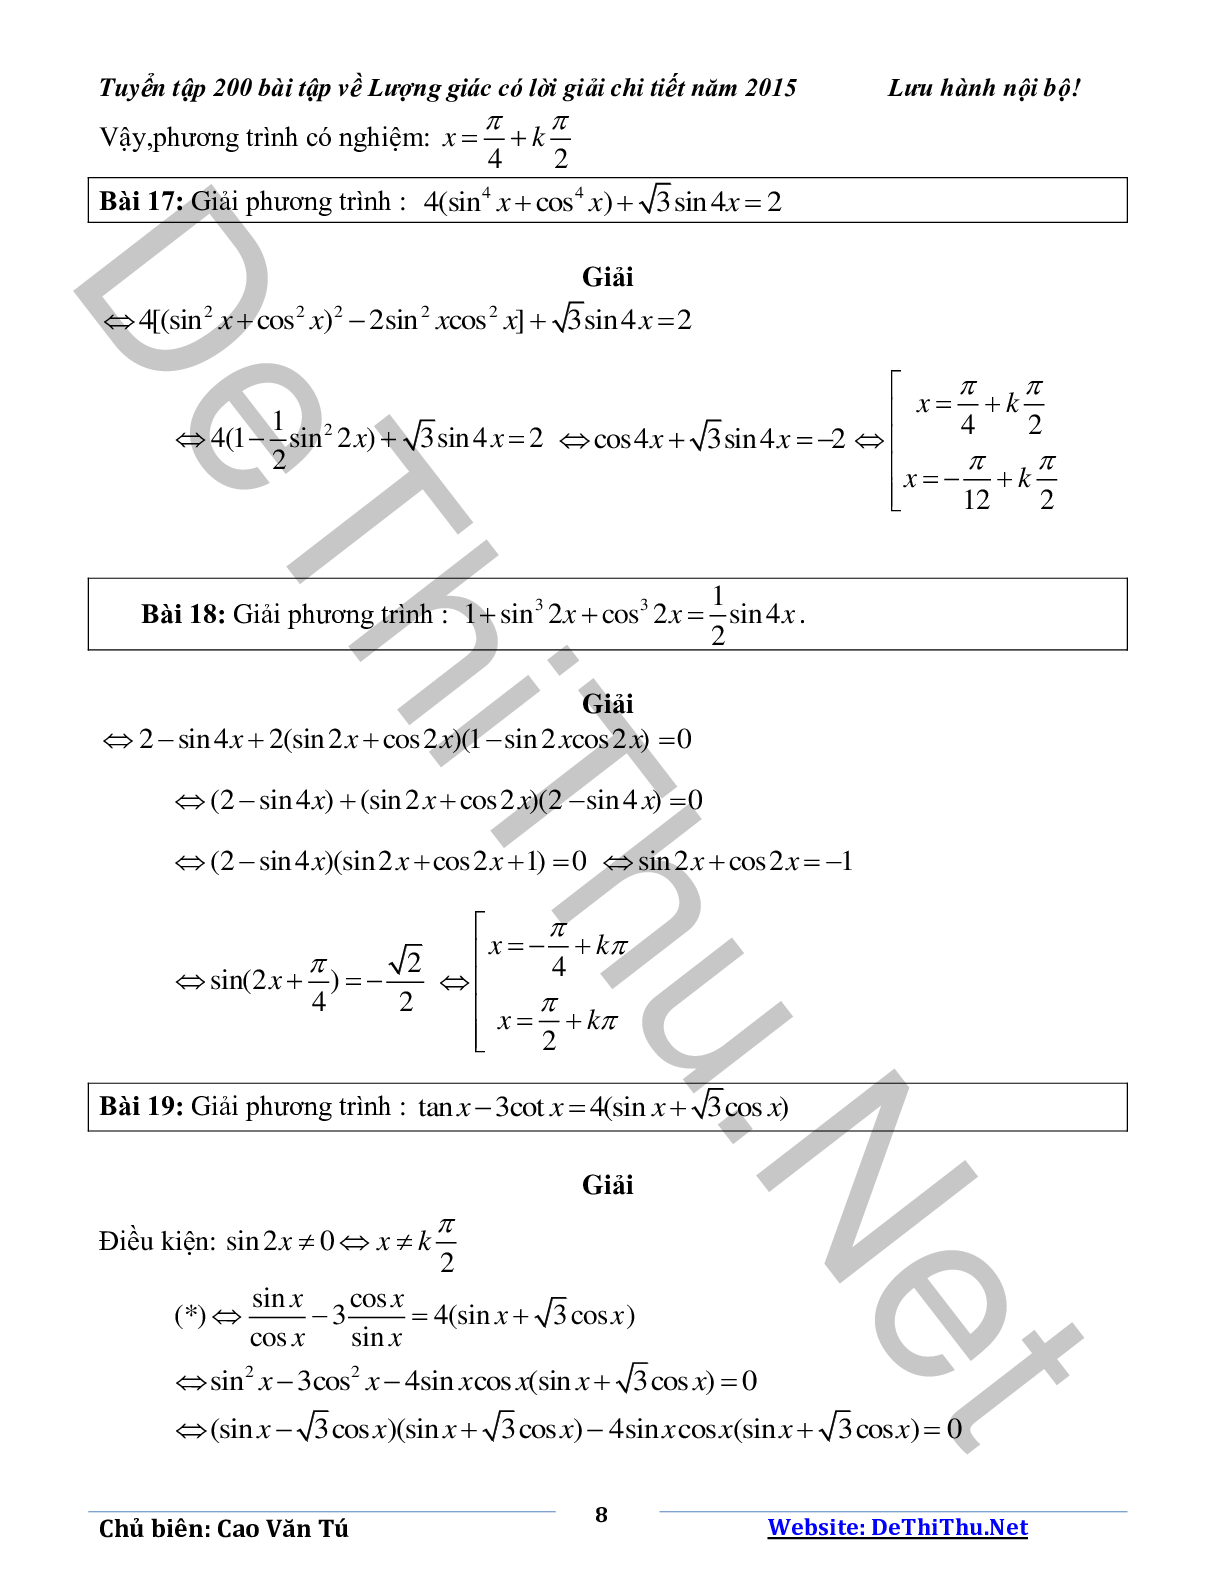 Tuyển tập 200 bài tập lượng giác có lời giải chi tiết năm 2015 (trang 8)